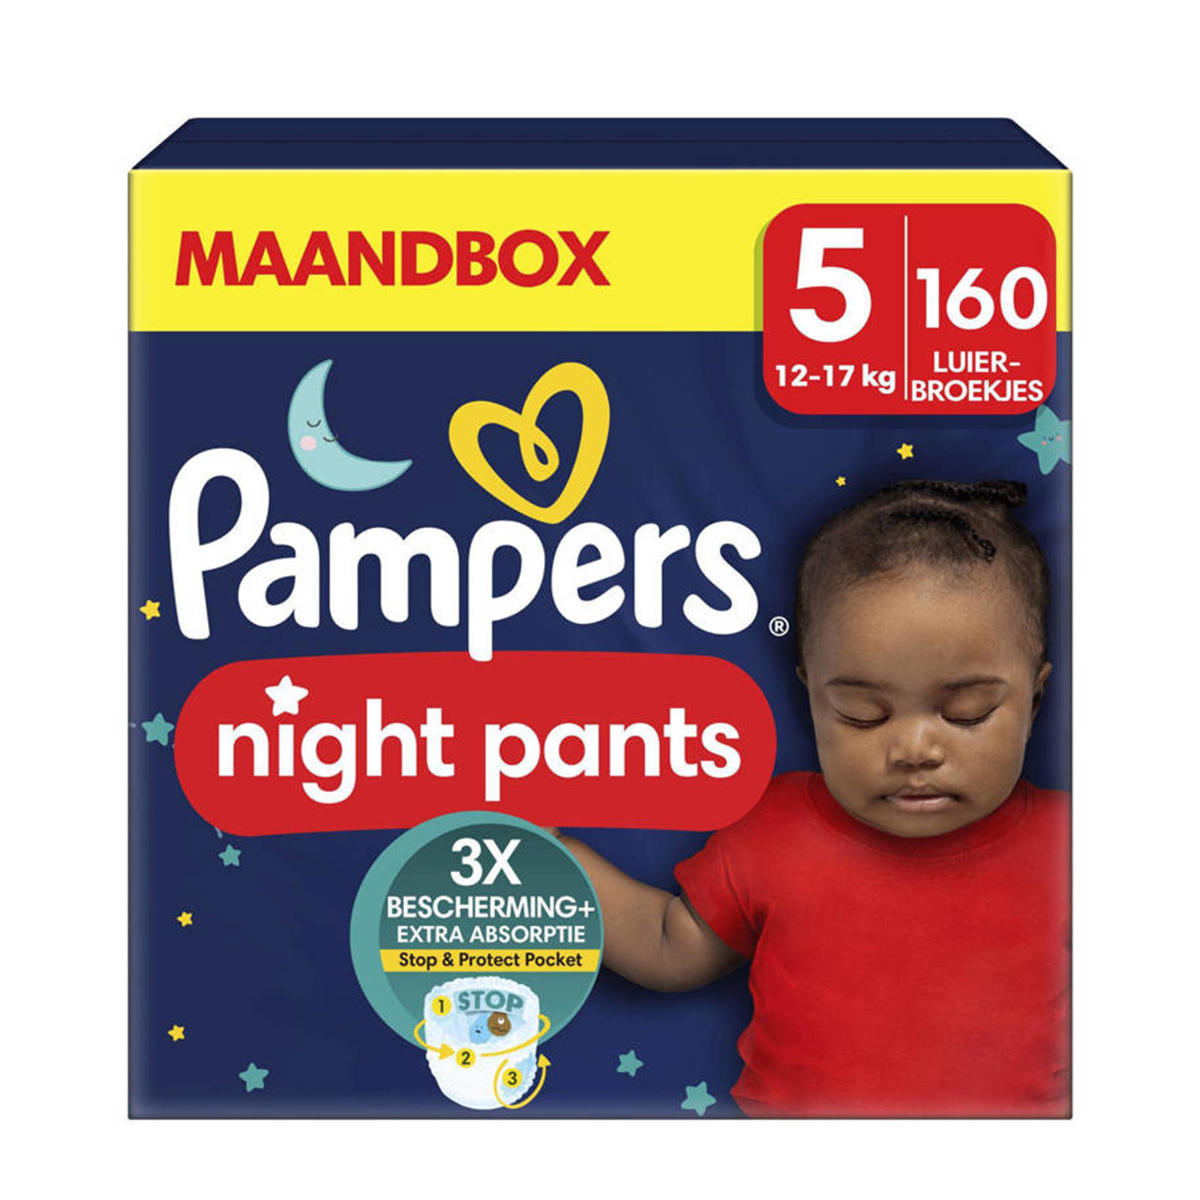 Pampers Baby-Dry Night Maat 5 160 luierbroekjes maandbox | kleertjes.com